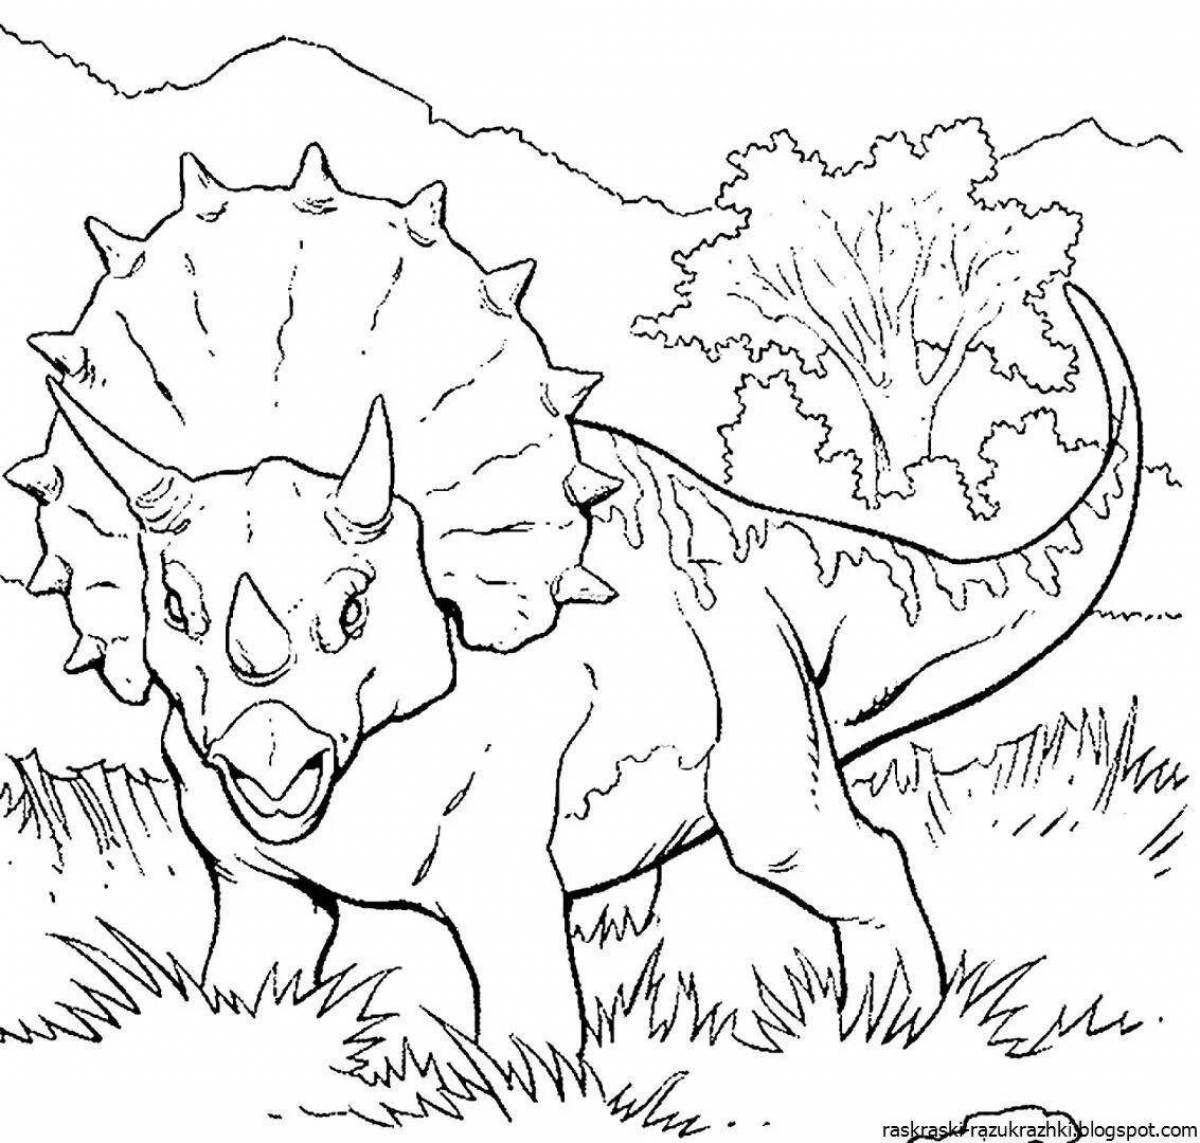 Увлекательная раскраска динозавров для мальчиков 5-6 лет